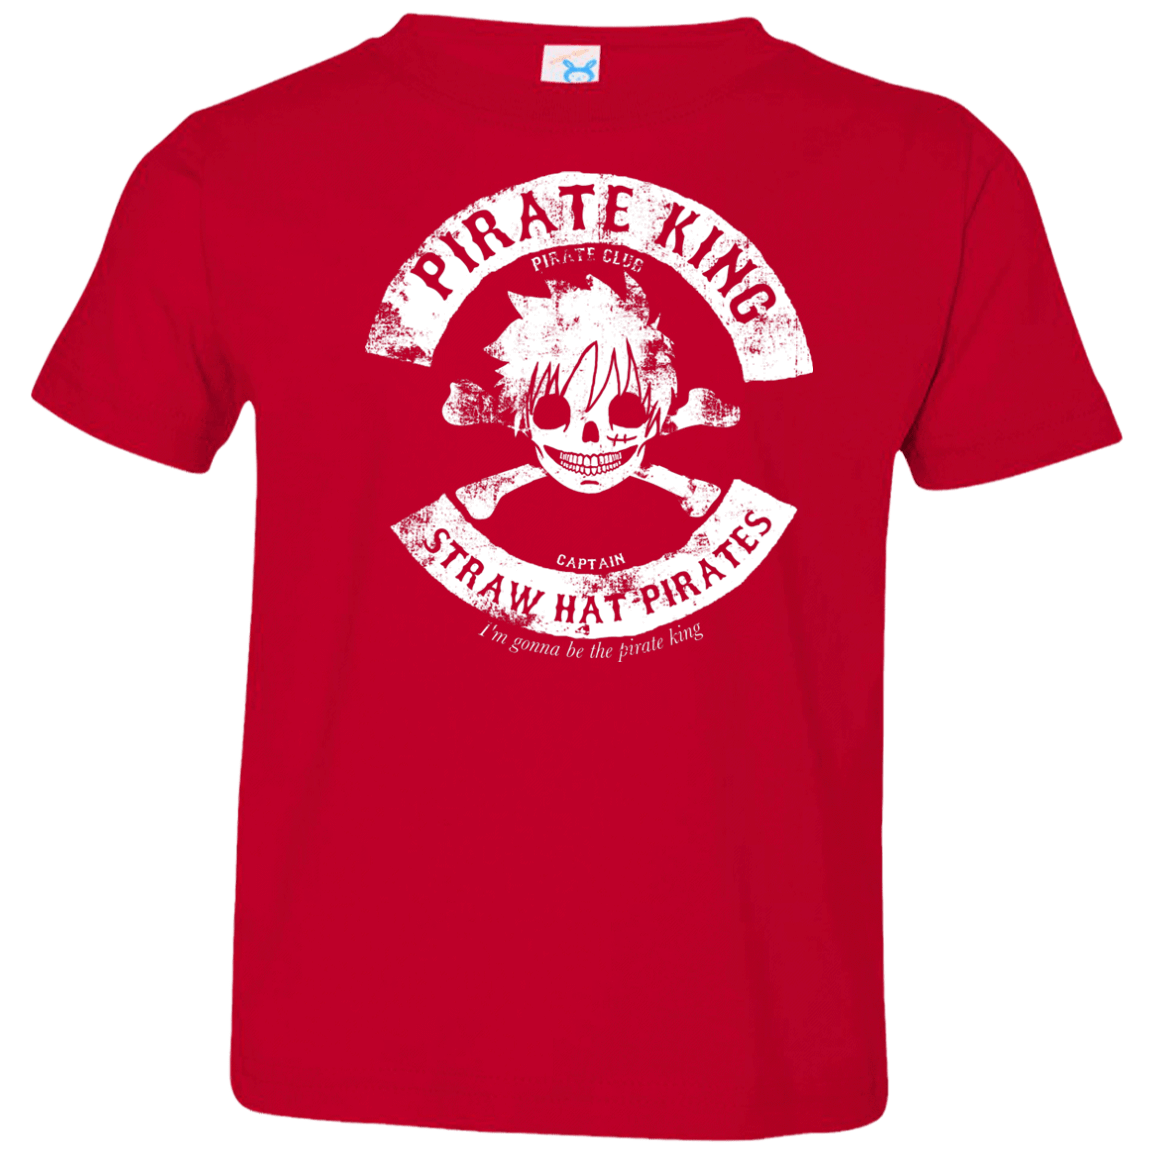 T-Shirts Red / 2T Pirate King Skull Toddler Premium T-Shirt